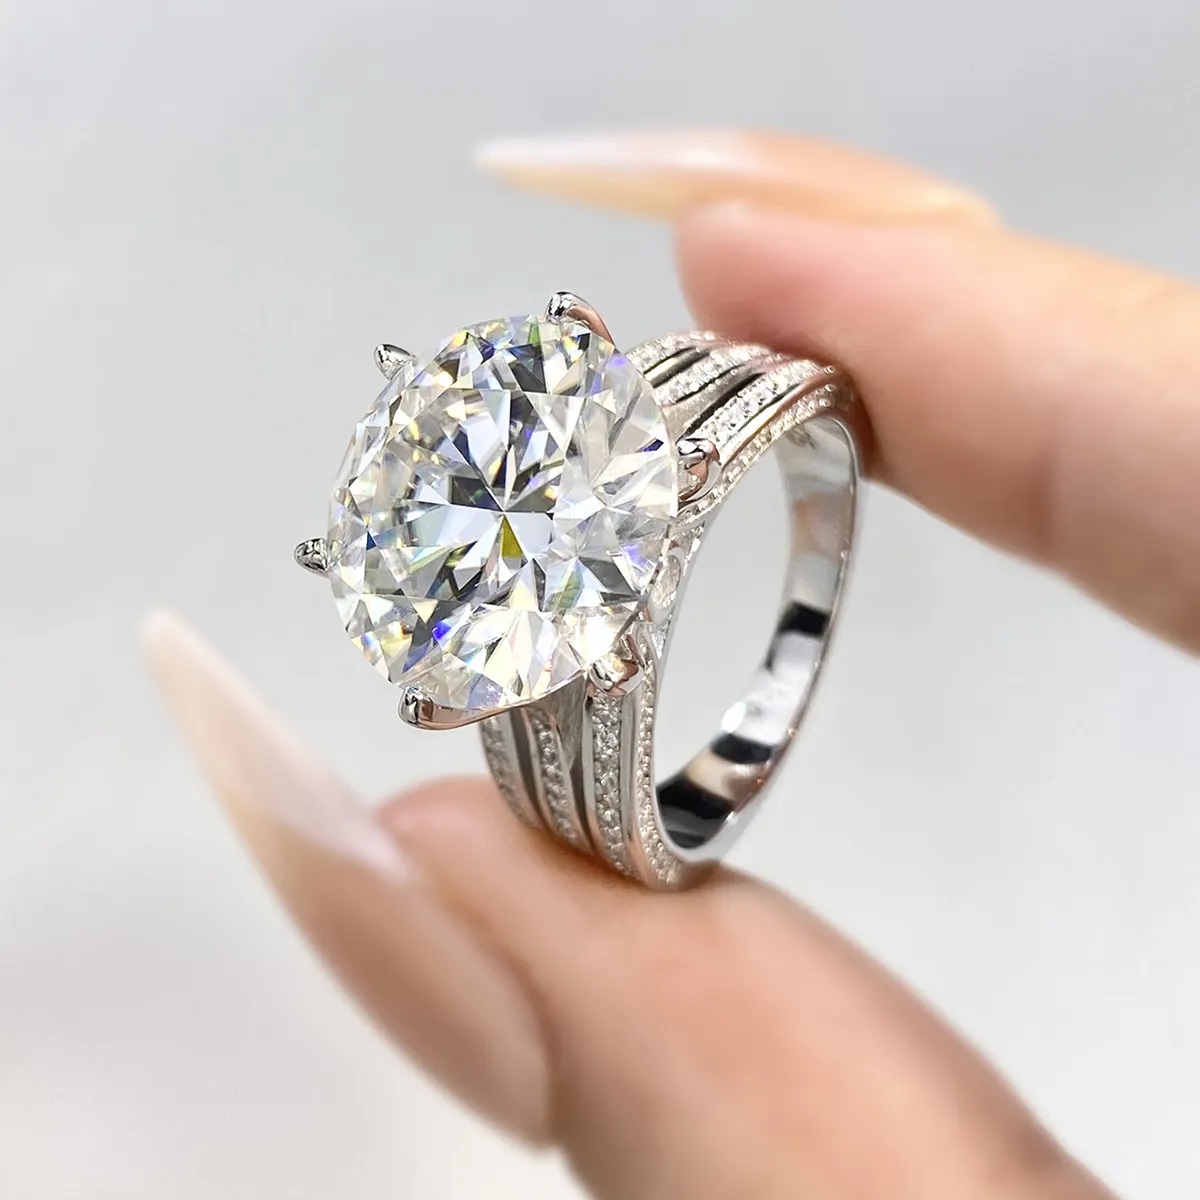 Großhandel GRA Runder Brillant schliff Luxus Diamant Moissan ite Ring S925 Silber 10ct Karat für Frauen Hochzeit Schmuck Geschenke